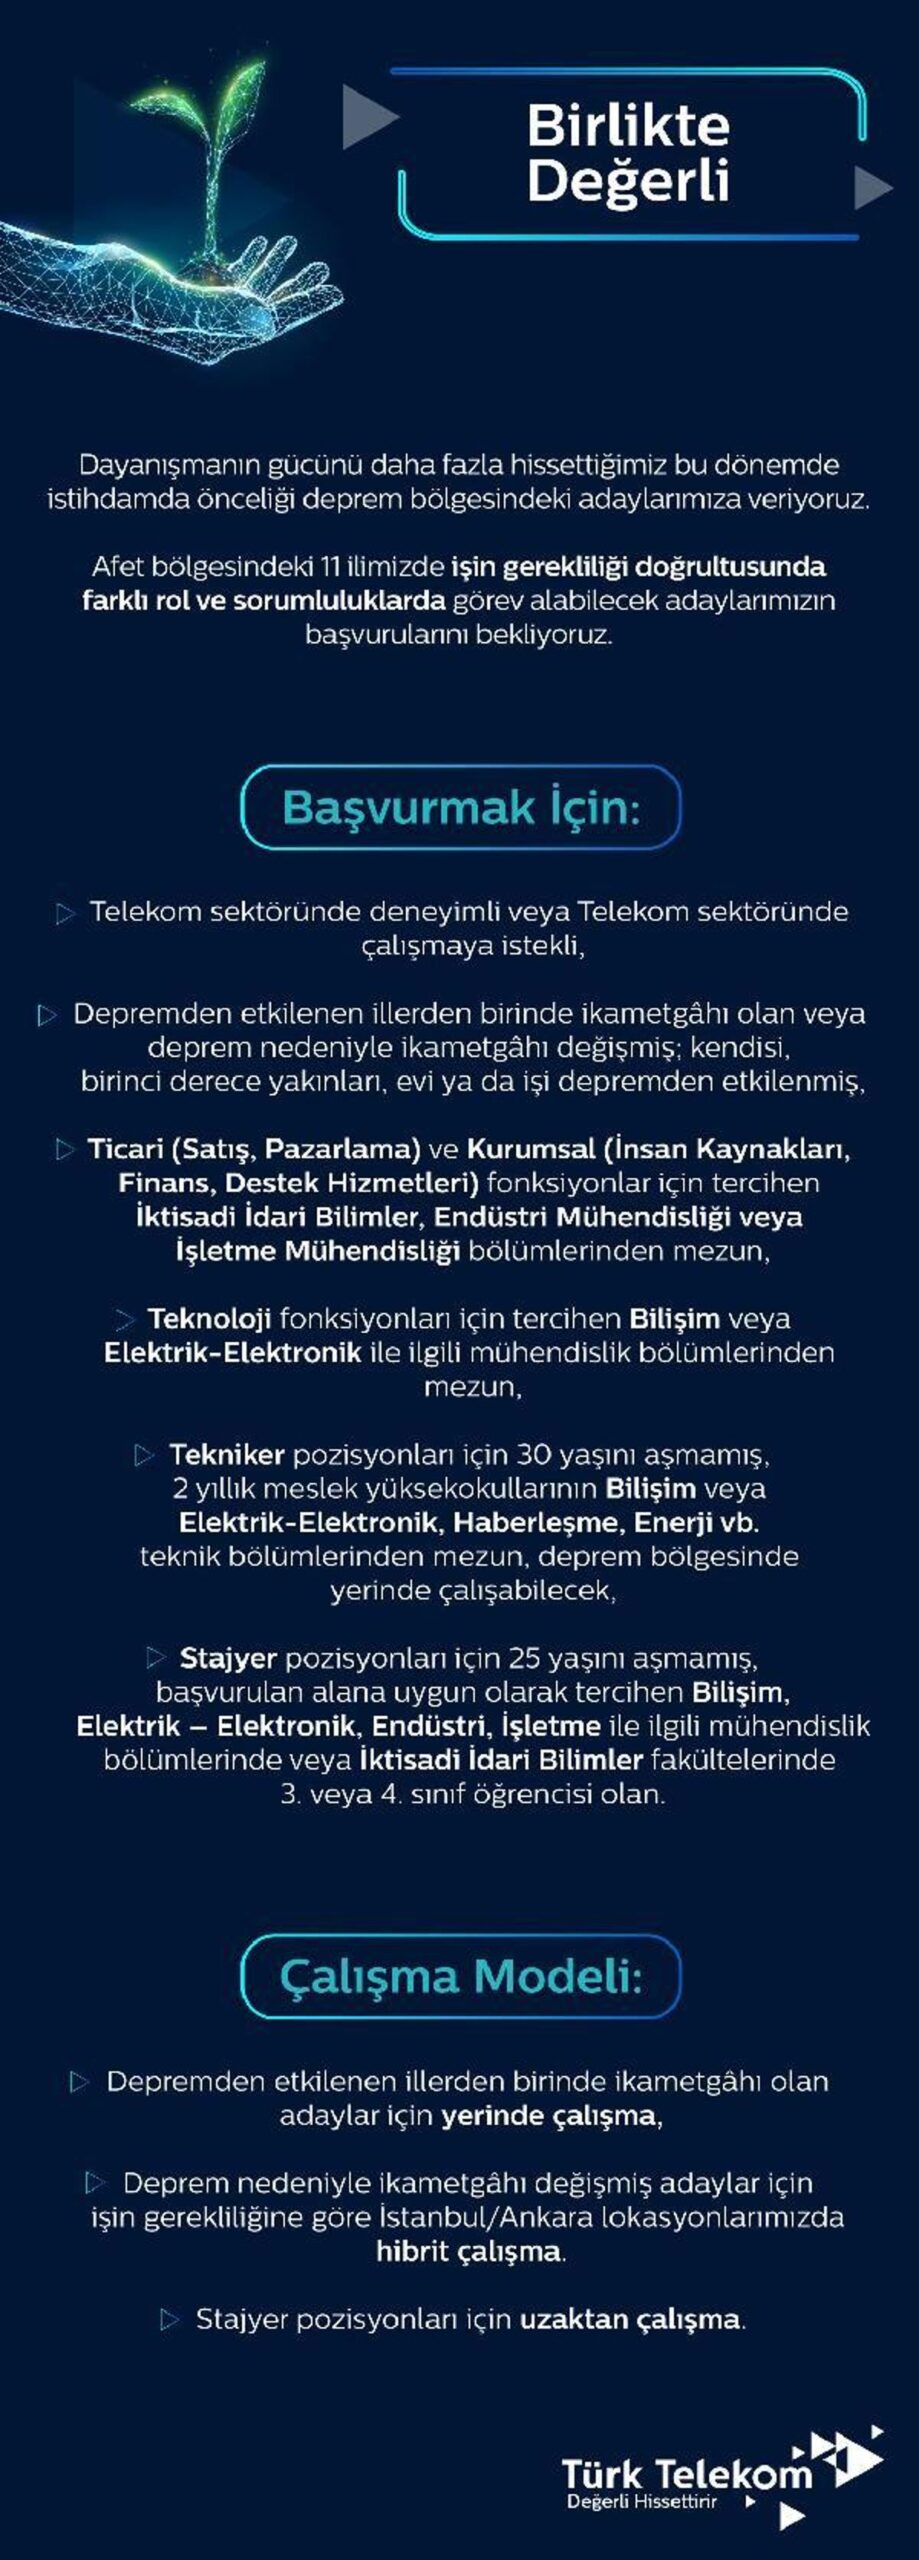 Türk Telekom'dan zelzele bölgesinde istihdam önceliği